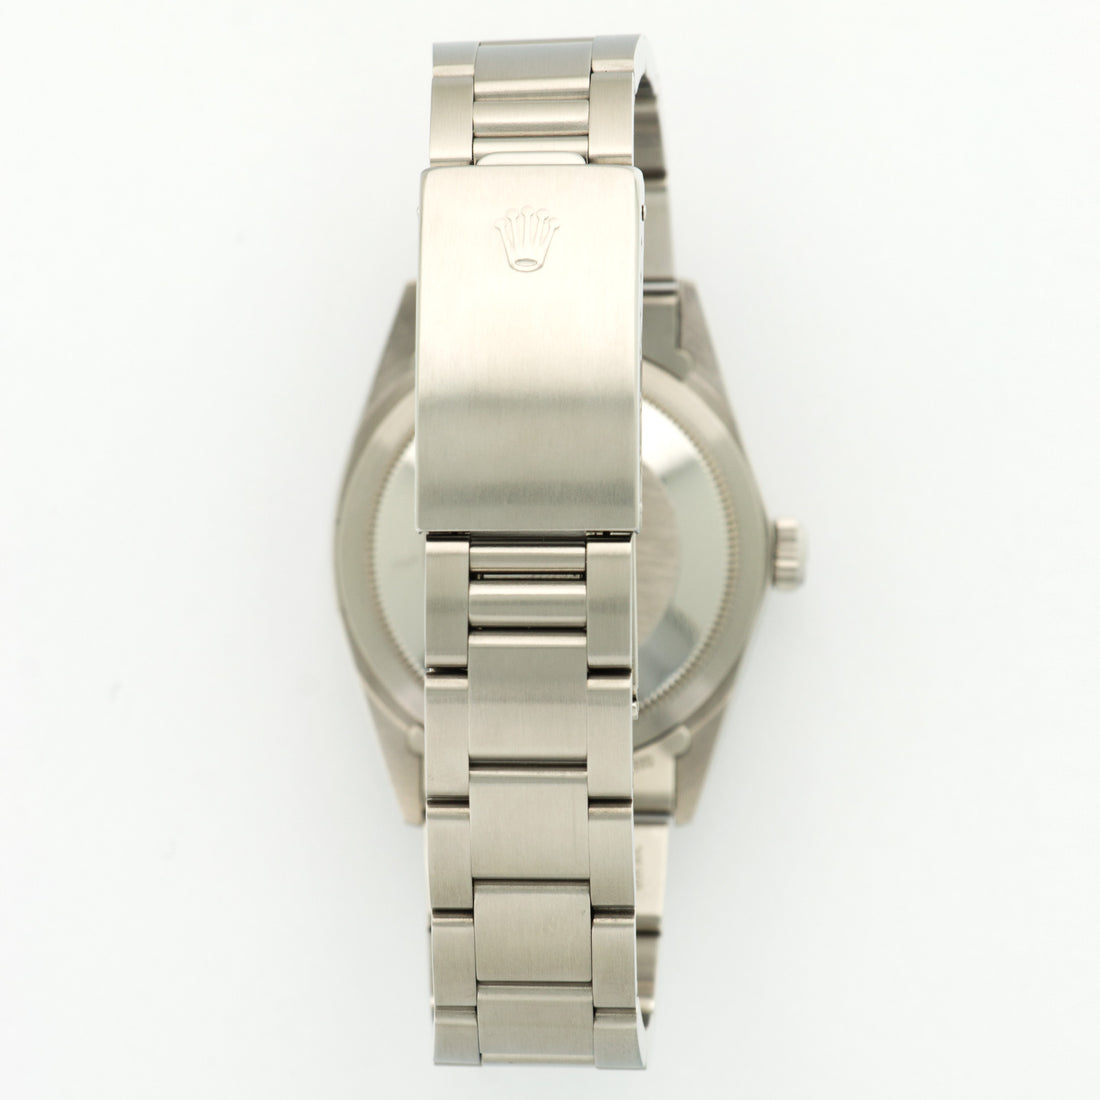 Rolex Explorer R-Series Watch Ref. 1016 with Paper